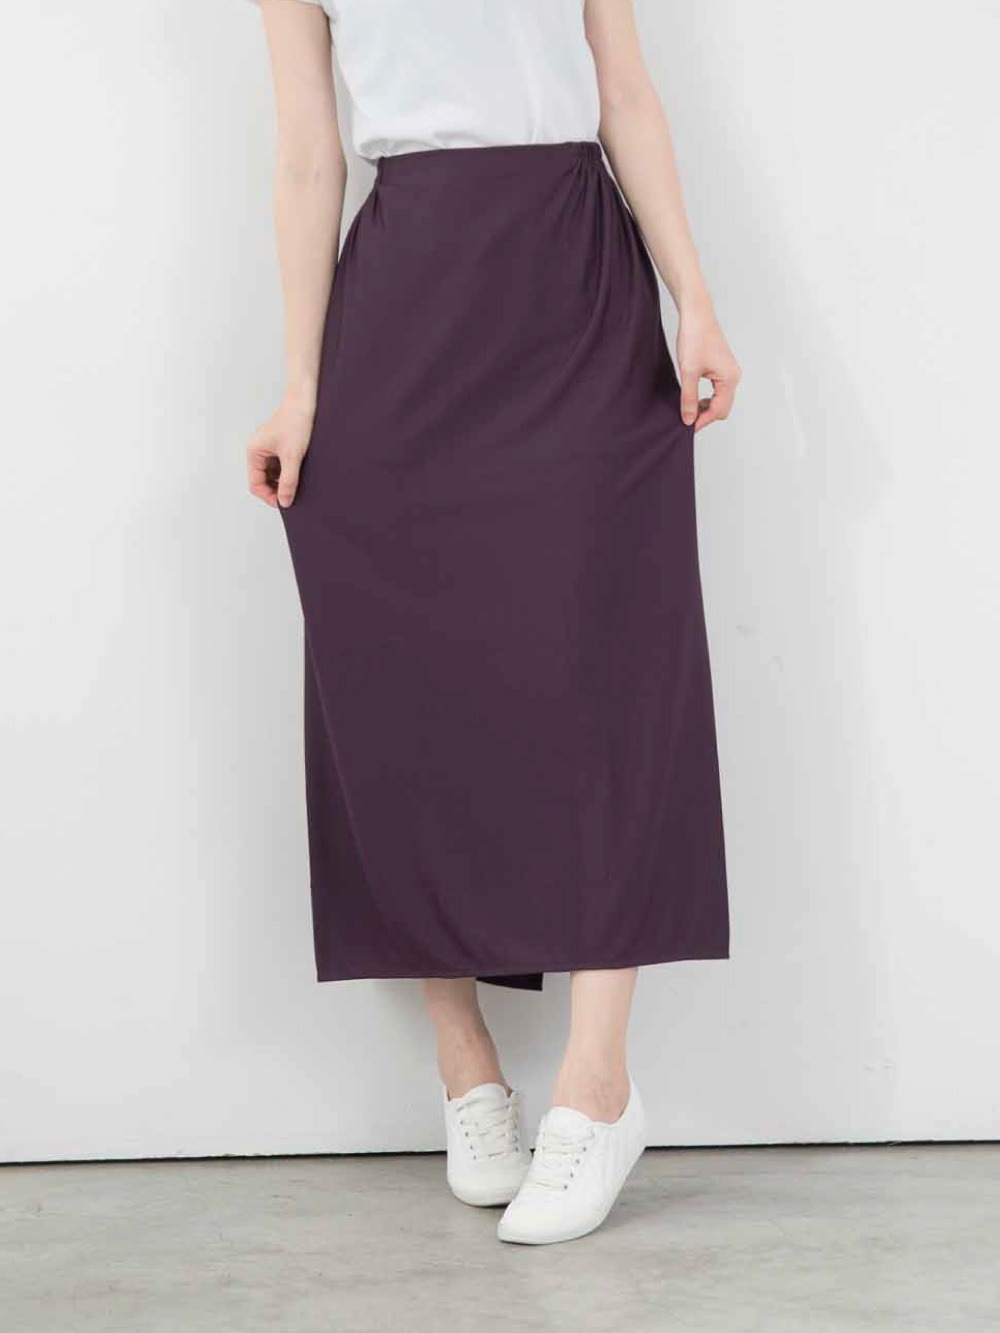 高透氣防曬遮陽裙-深紫